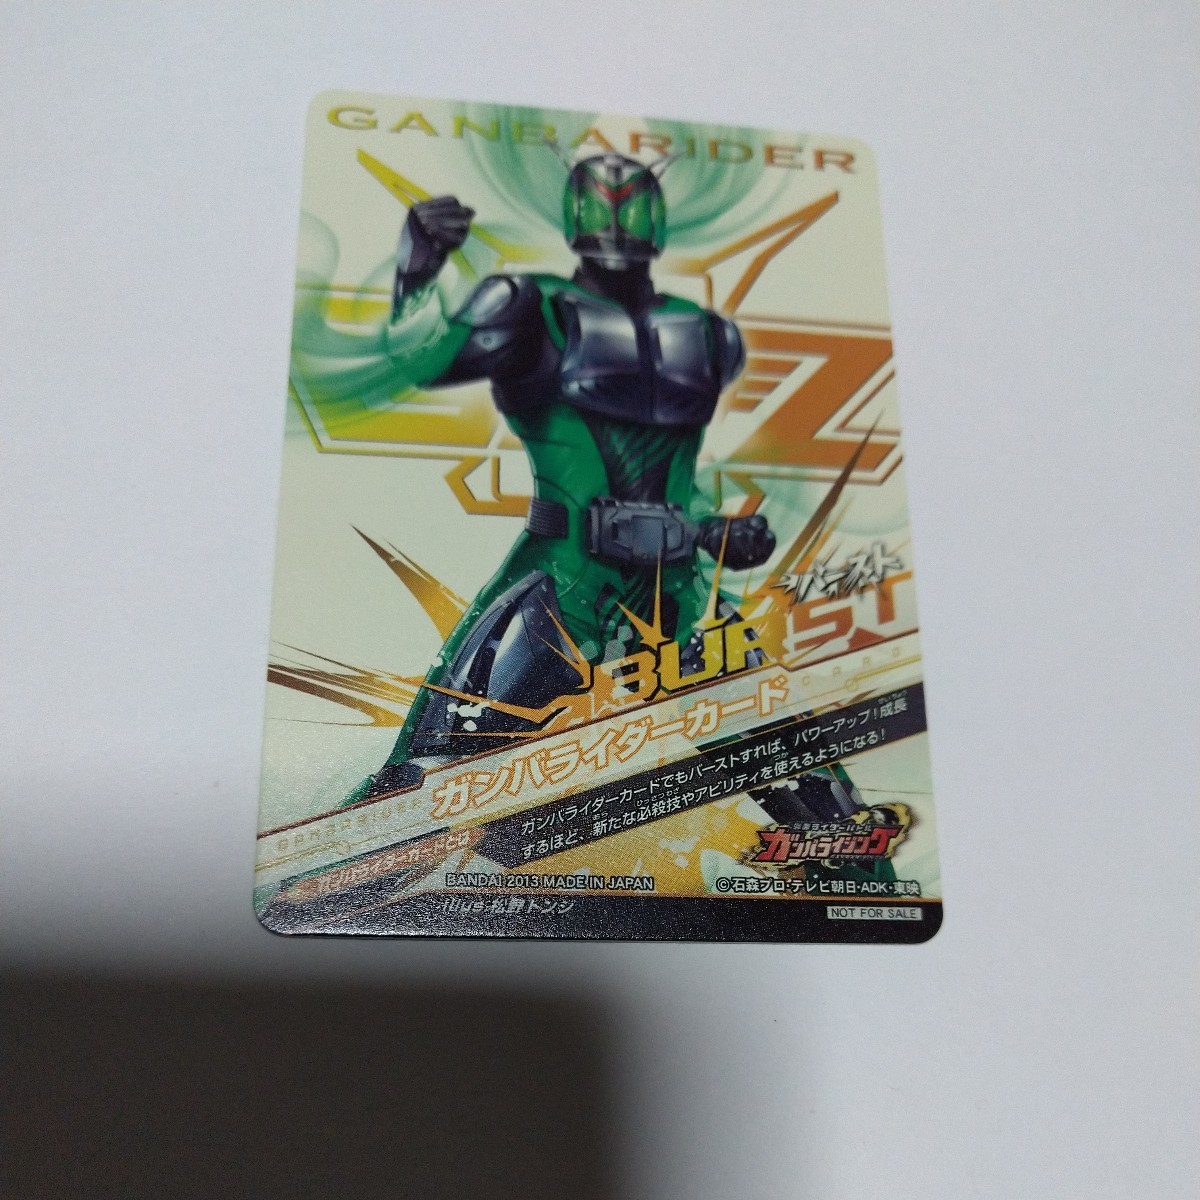 [ редкий ] Kamen Rider Battle / gun ba Rising / gun ba rider карта /2013 год / промо / информационная карта das/ не продается / первый период / распространение / витрина распространение 